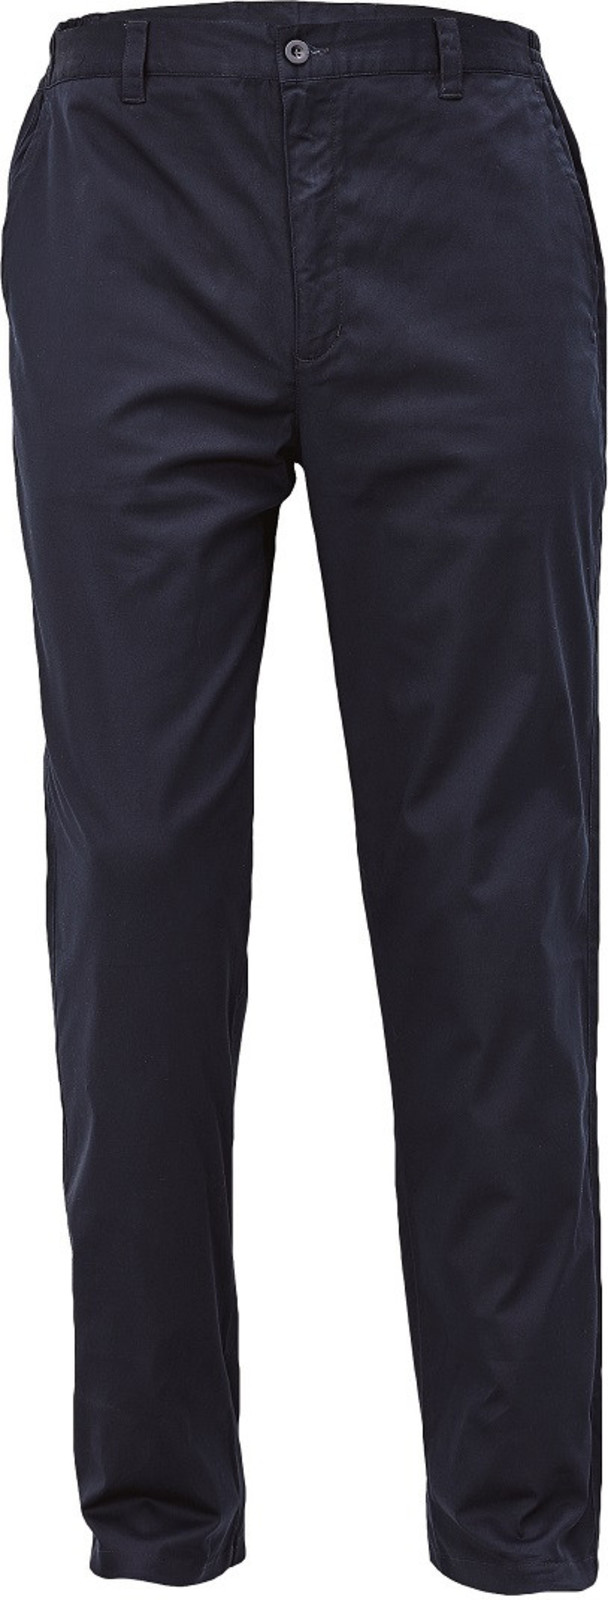 Voľnočasové nohavice Lagan pánske - veľkosť: 56, farba: navy